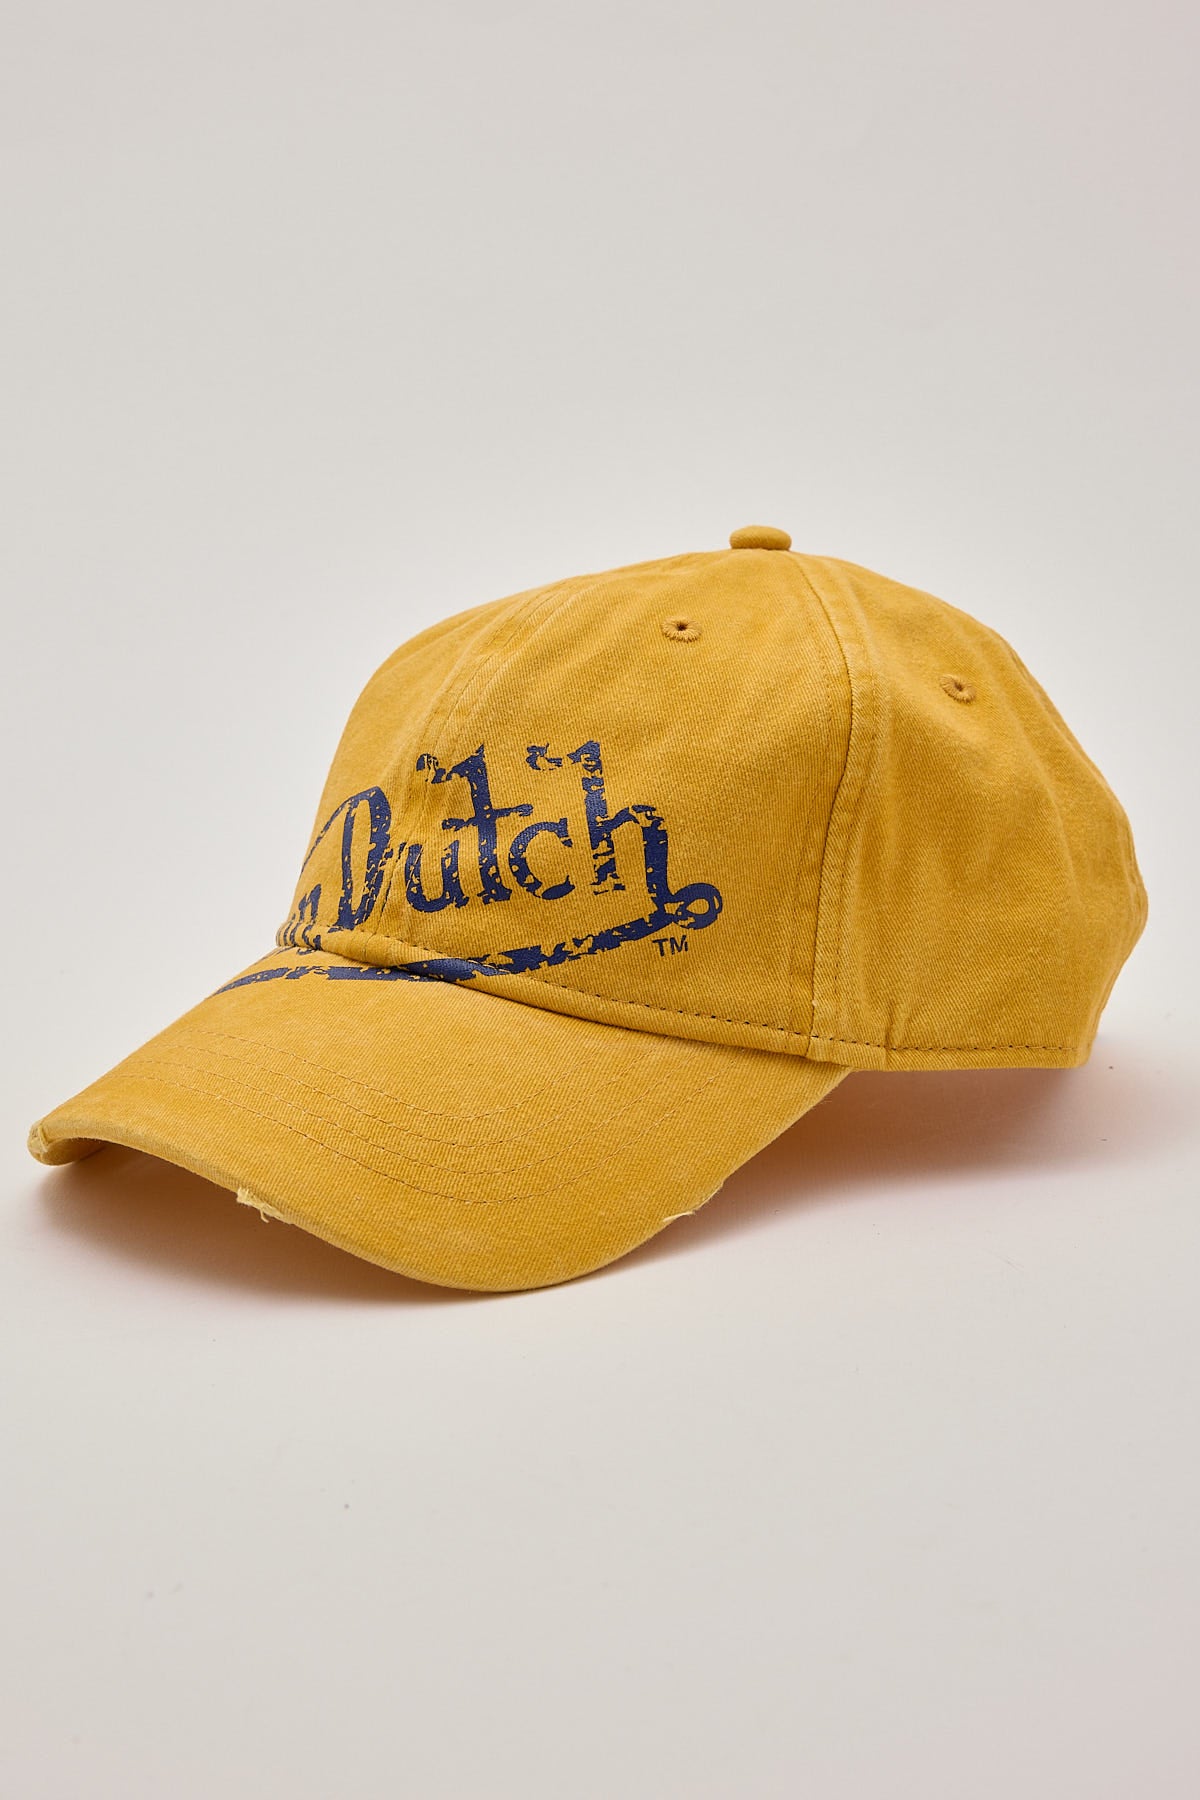 Von Dutch Dad Cap Washed Mustard